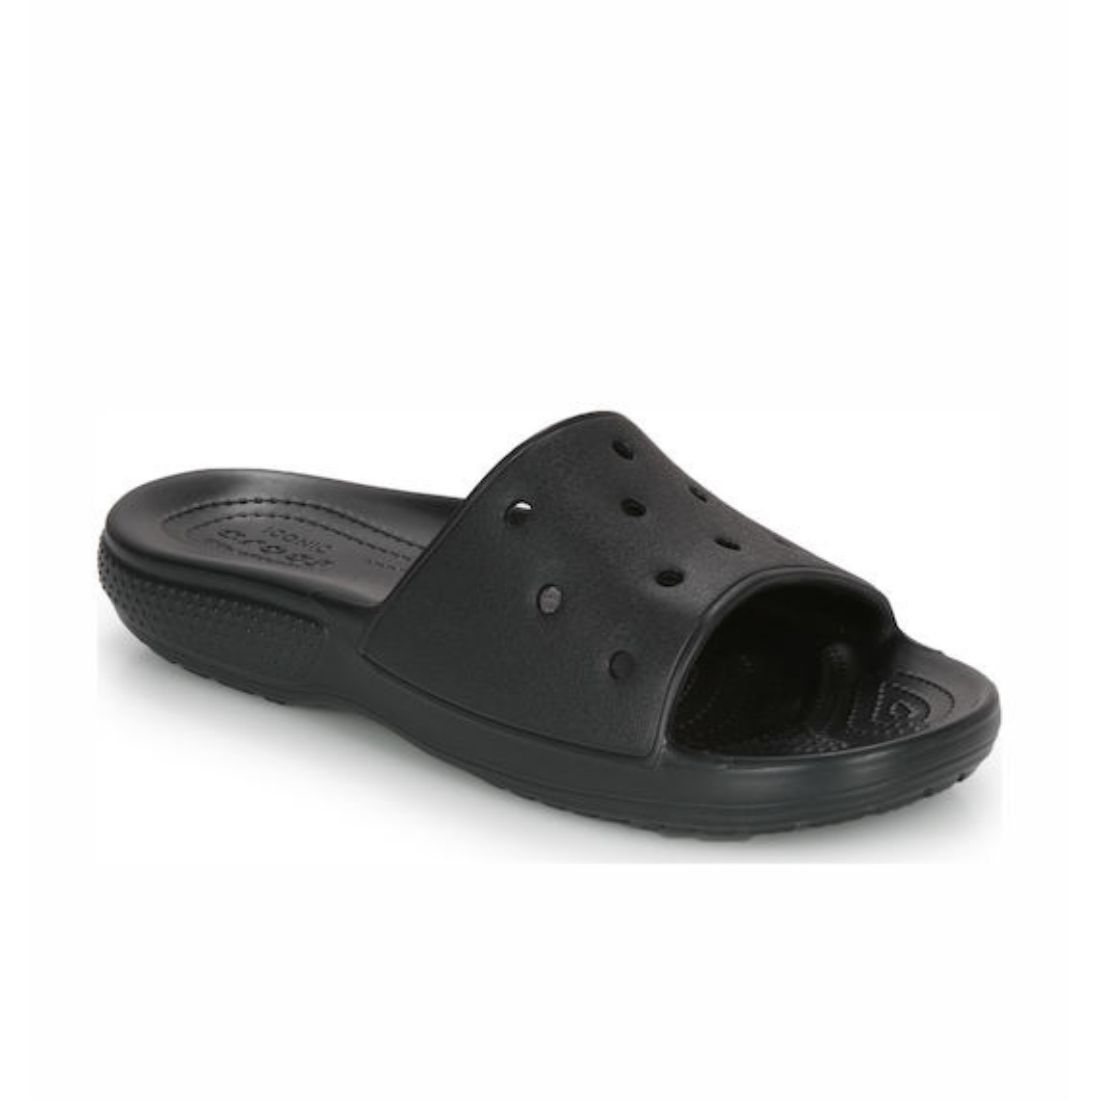 Crocs Classic Slide 206121-001 Black